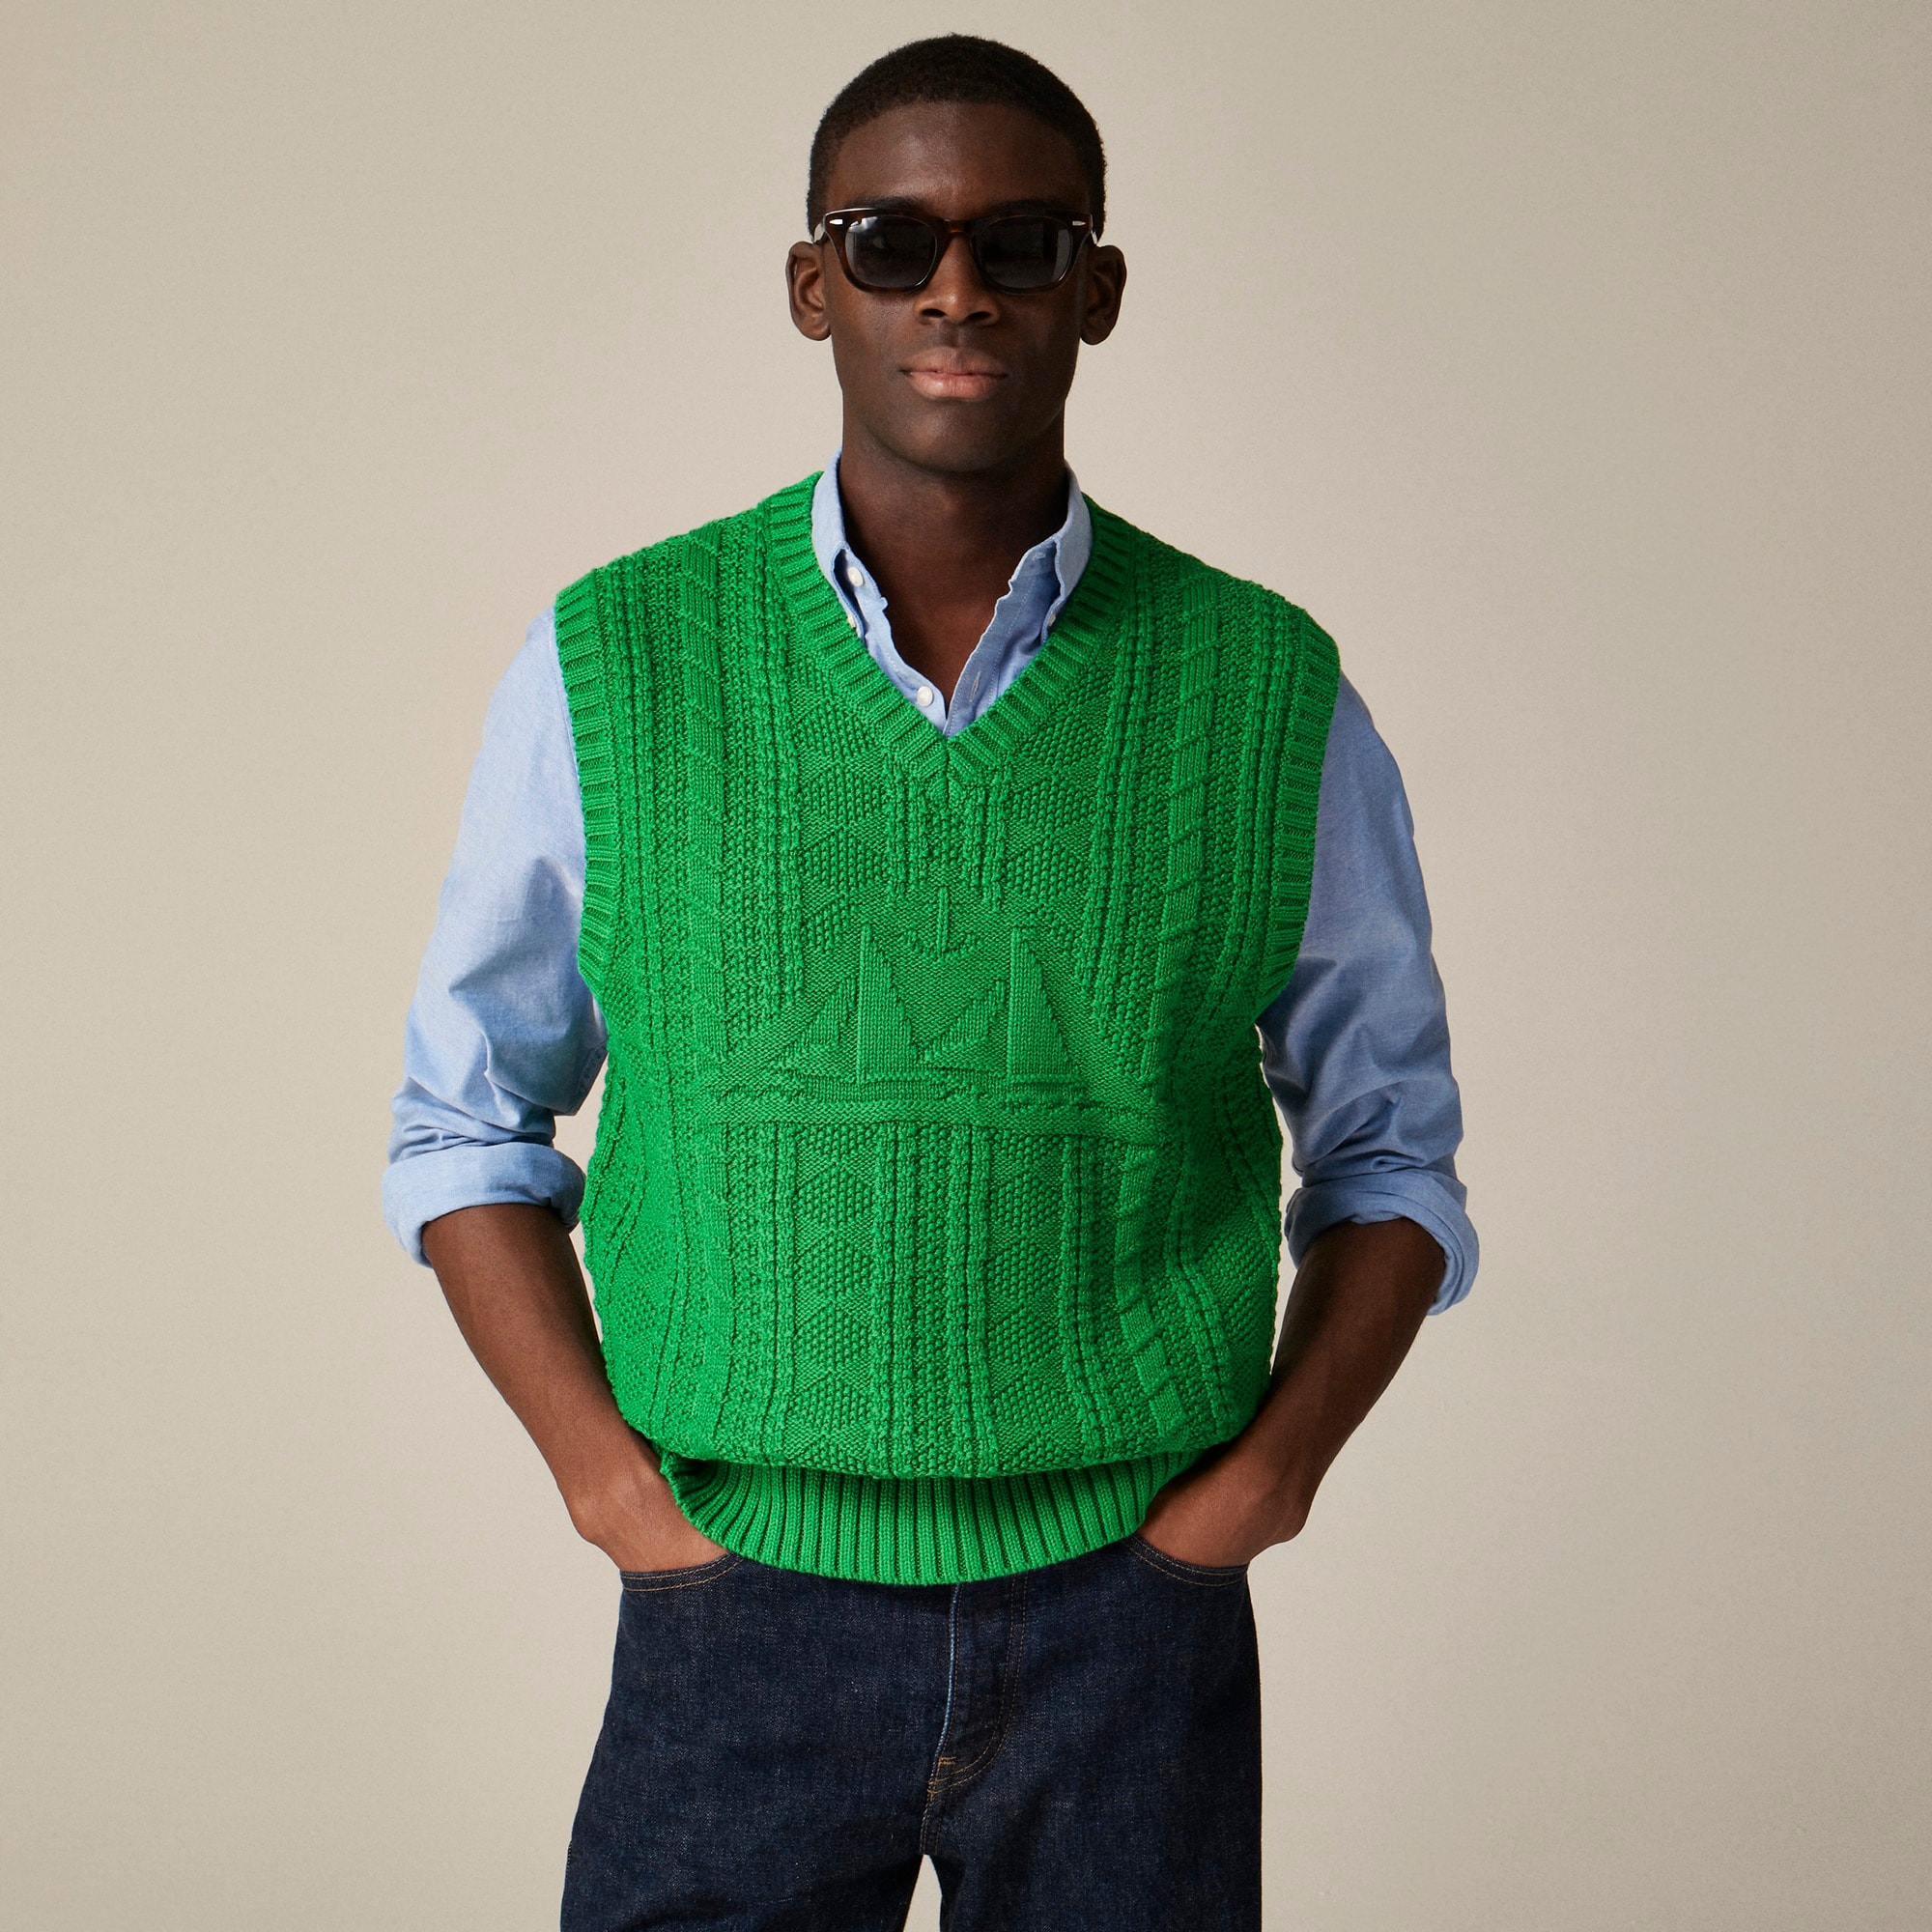 Jcrew Cotton sweater-vest with sailboat motif